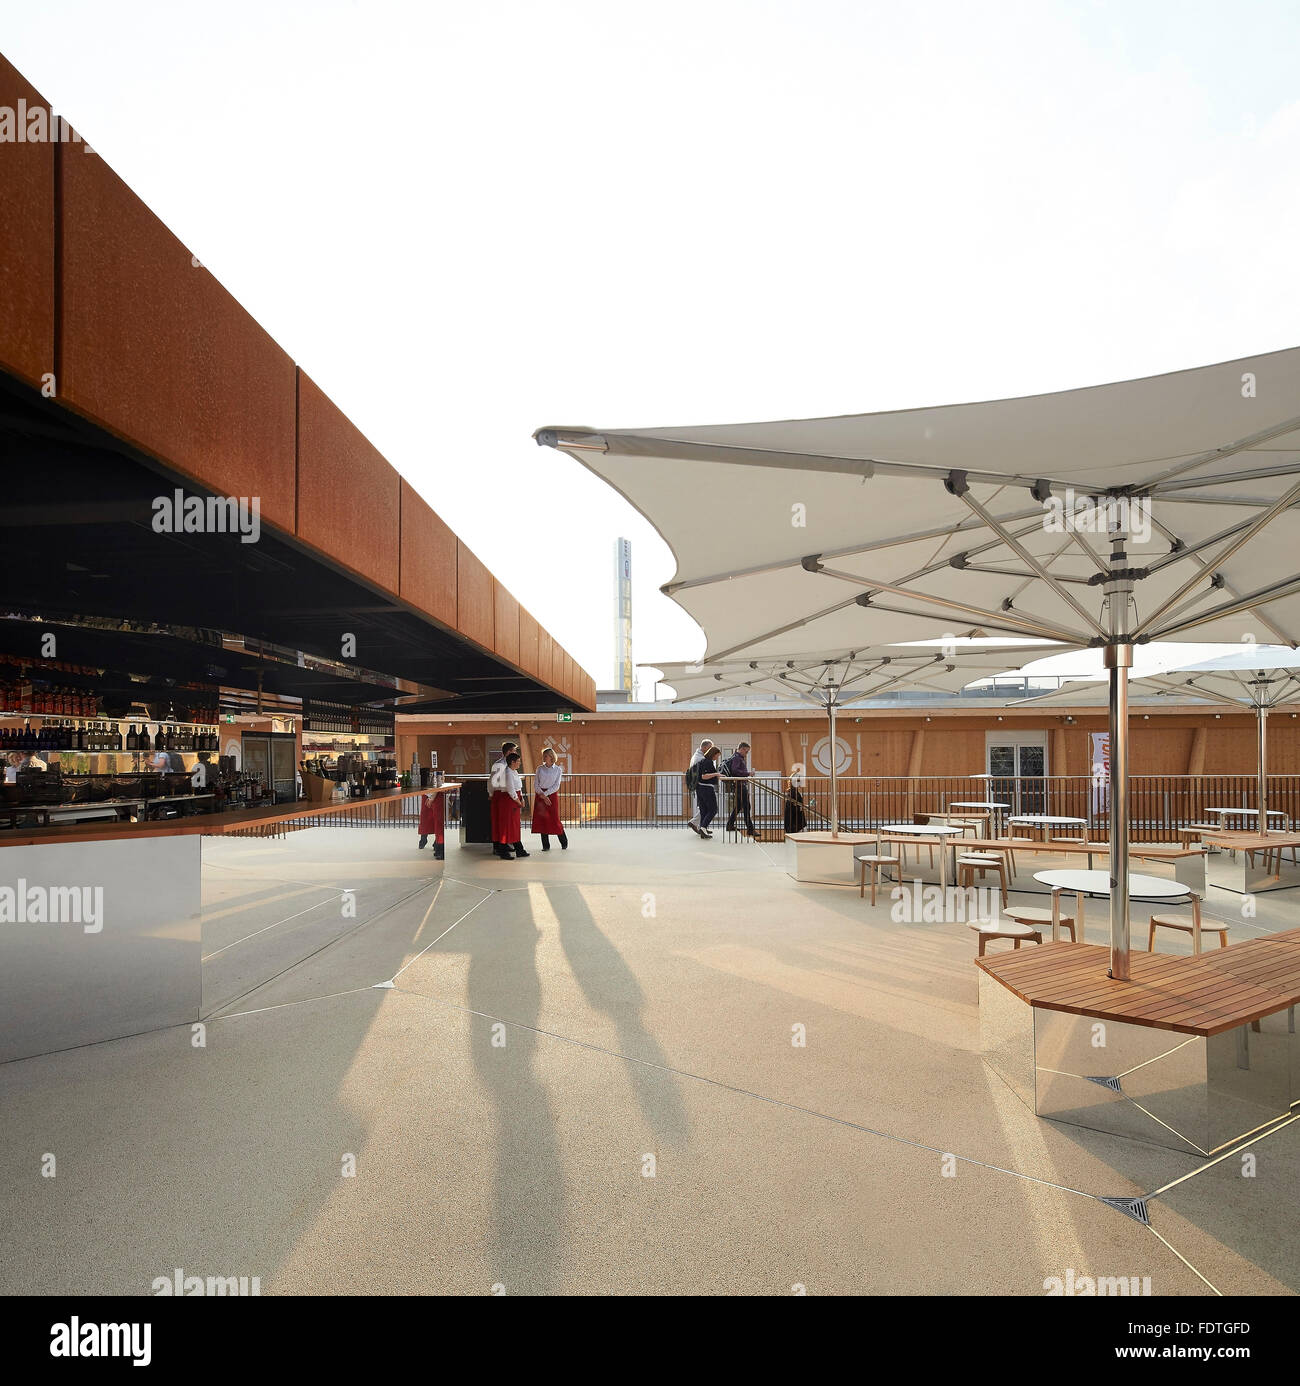 Terrazza sul tetto. Milano Expo 2015, UK Pavilion, Milano, Italia. Architetto: Wolfgang contrafforte, 2015. Foto Stock